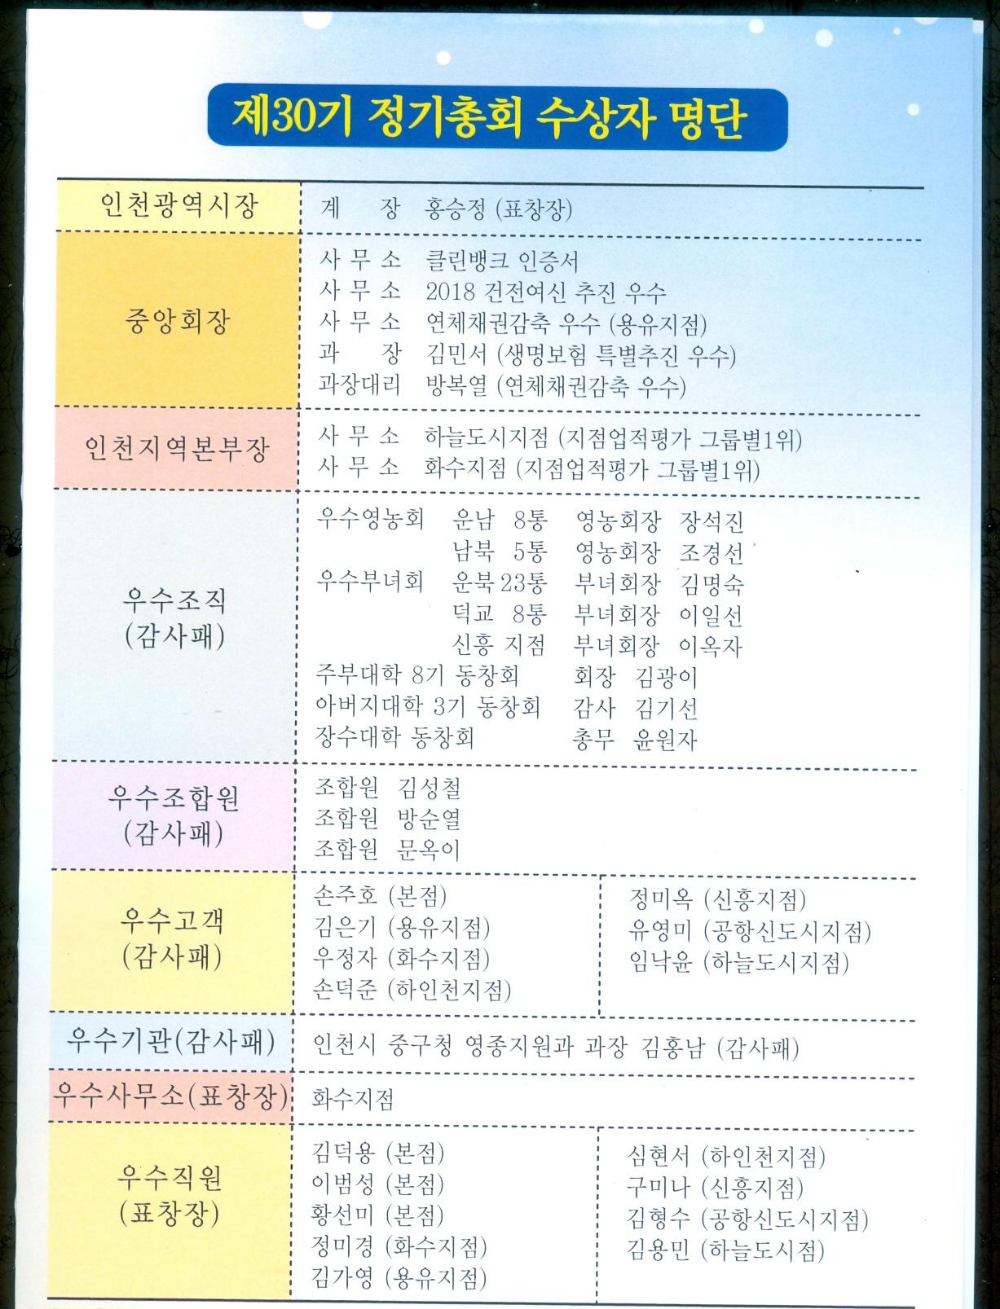 인천 중구농협 제30기 결산총회 개최